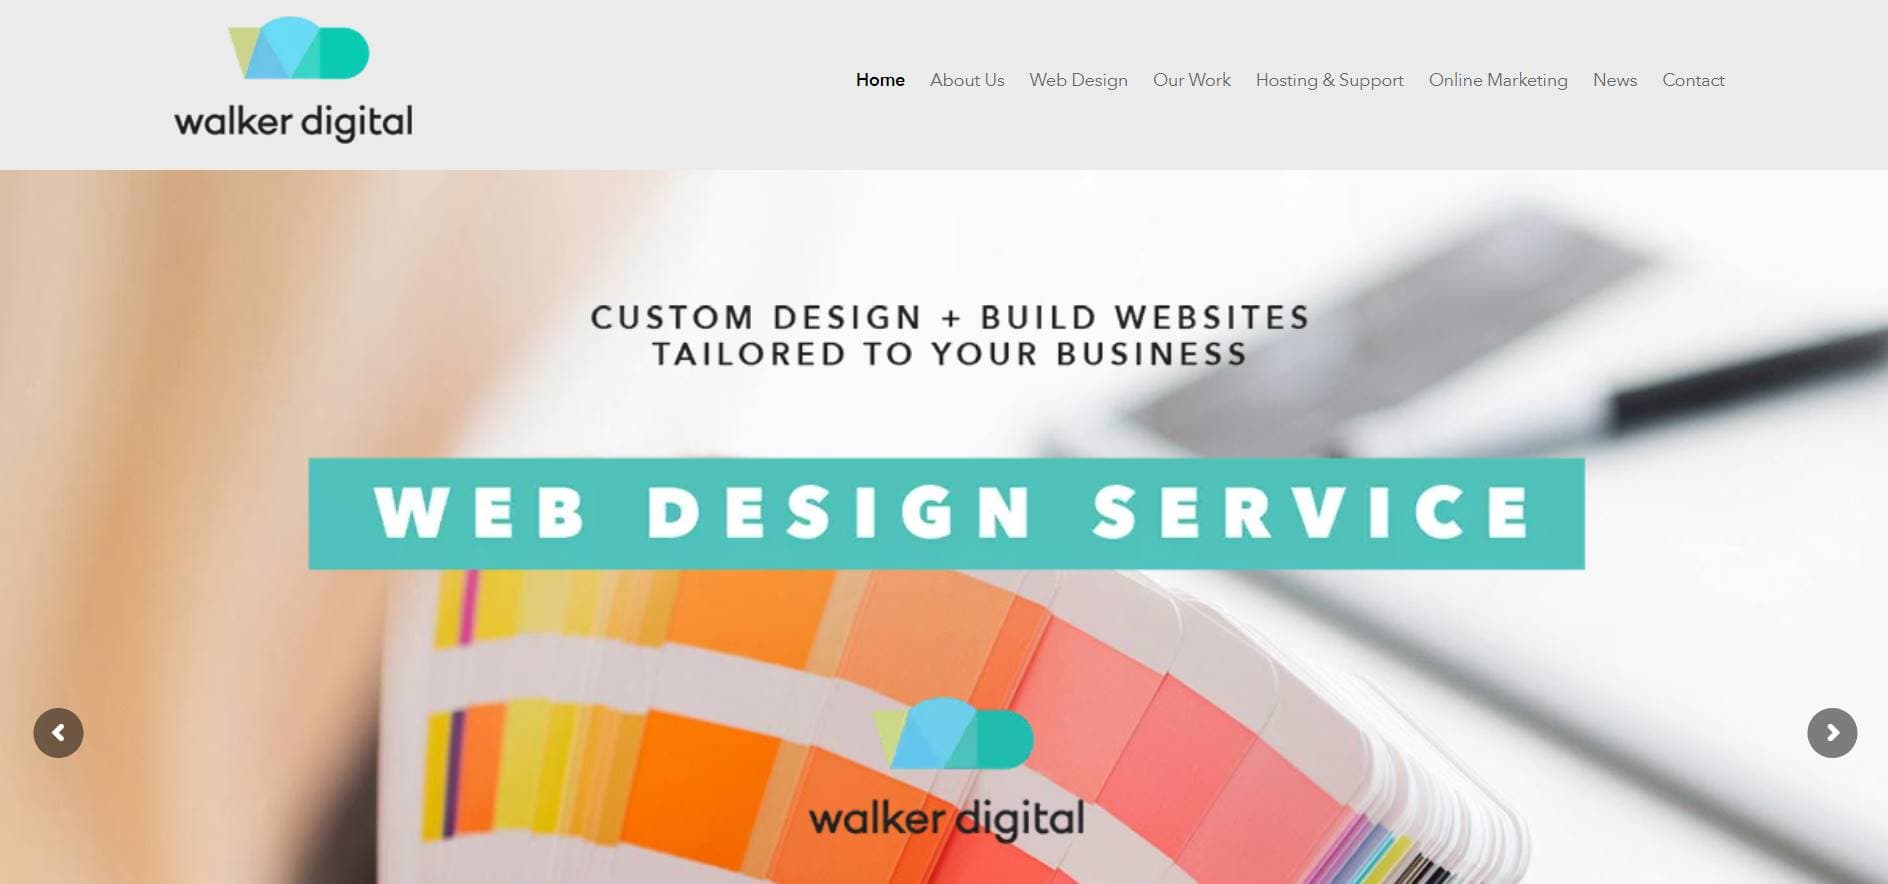 walker digital website designers melbourne